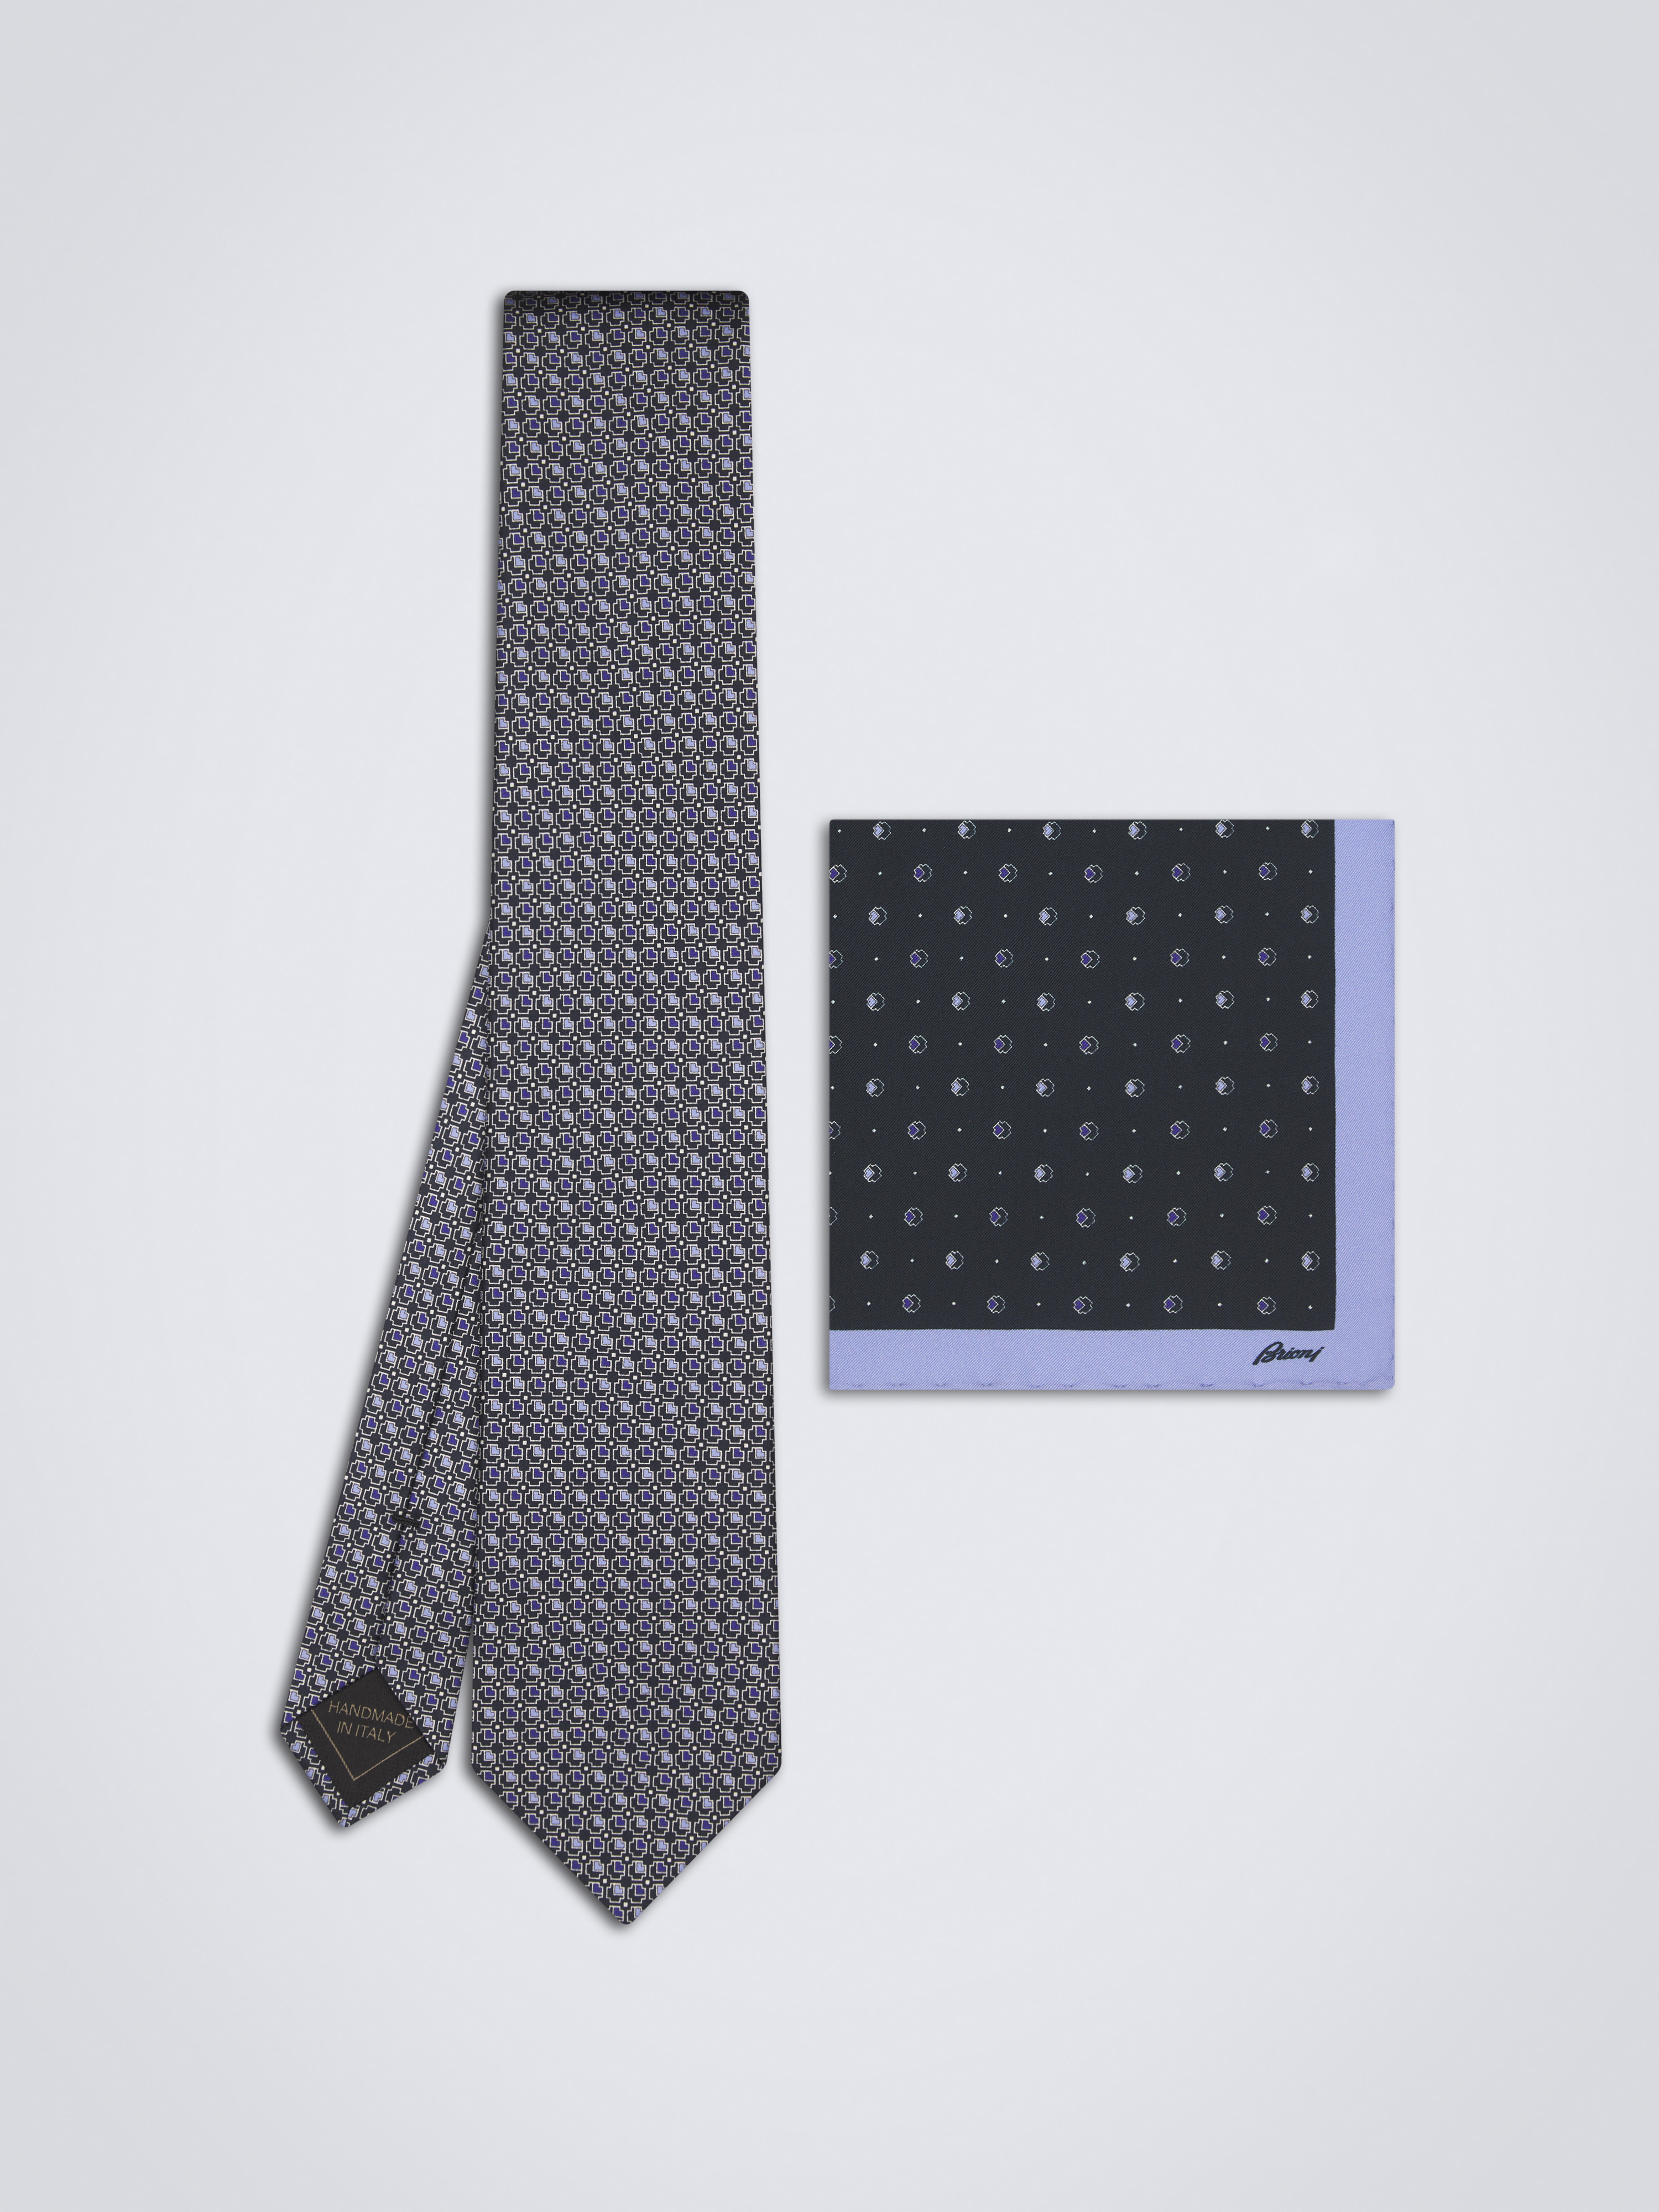 ネクタイとポケットチーフ | ブリオーニ® 日本 公式ストア